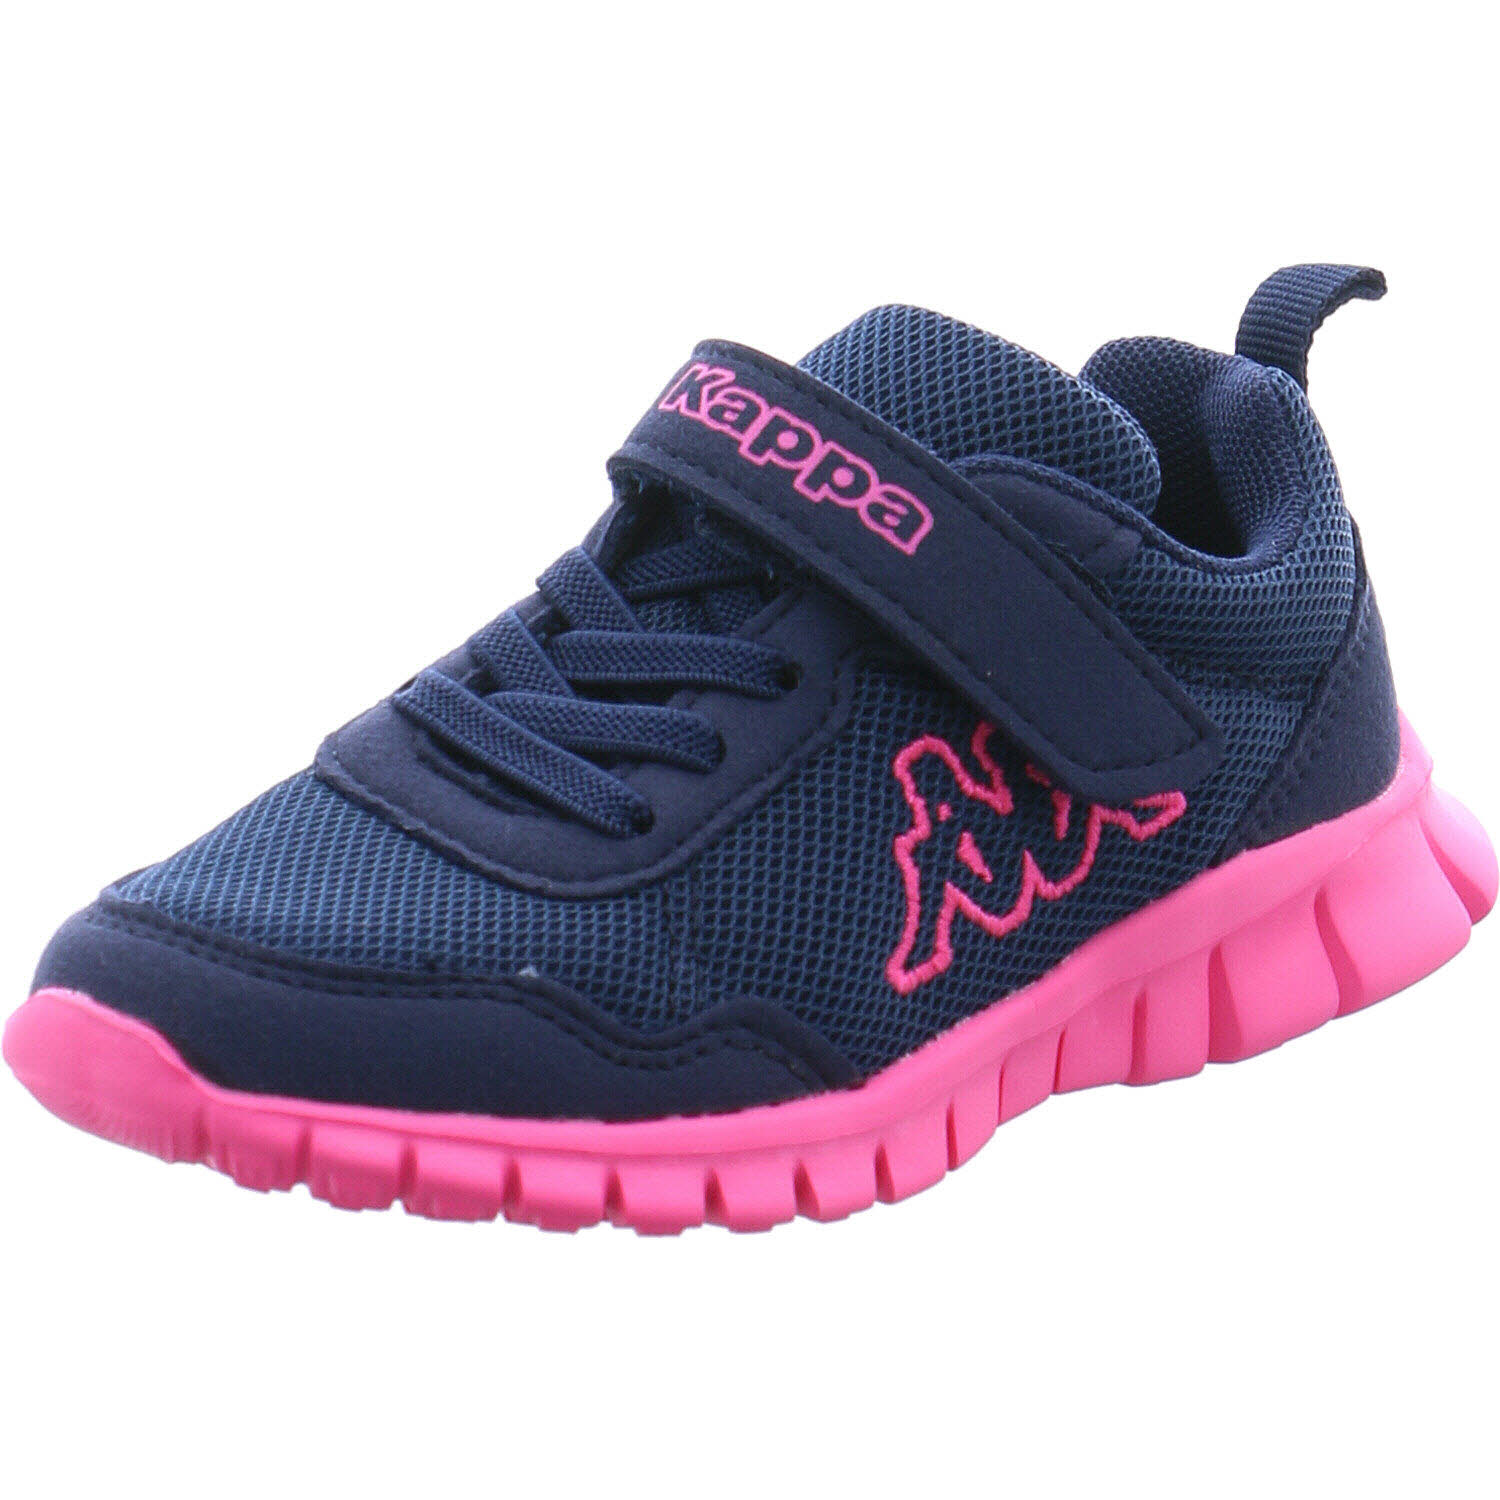 Kappa Sneaker low Stylecode: 260982 BCK VALDIS BC K für Mädchen in blau/pink  | P&P Shoes